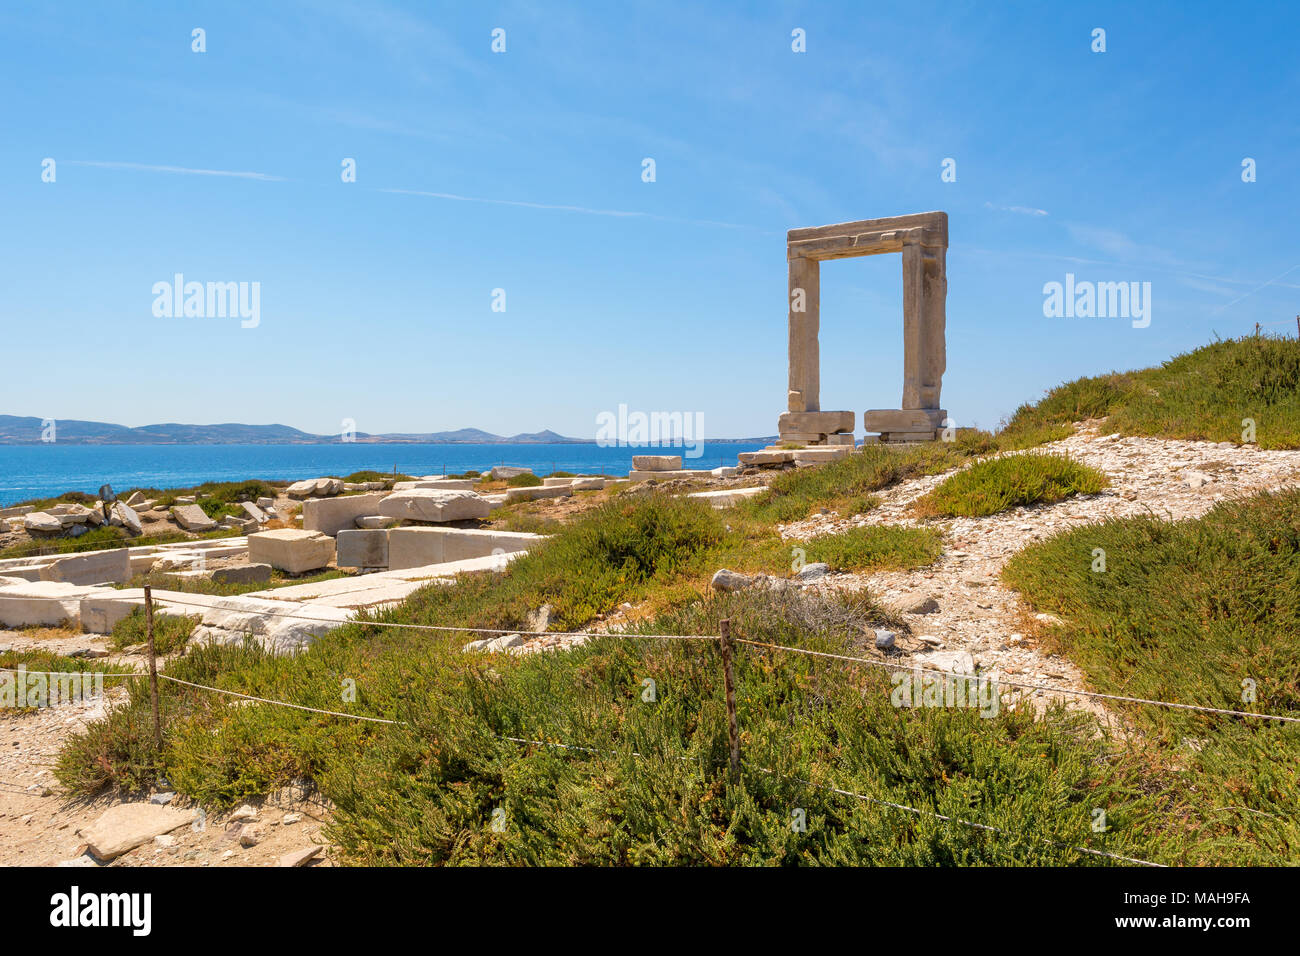 La Portara, l'un des monuments plus célèbres de Naxos Naxos (Chora) ville. Îles des Cyclades, en Grèce. Banque D'Images